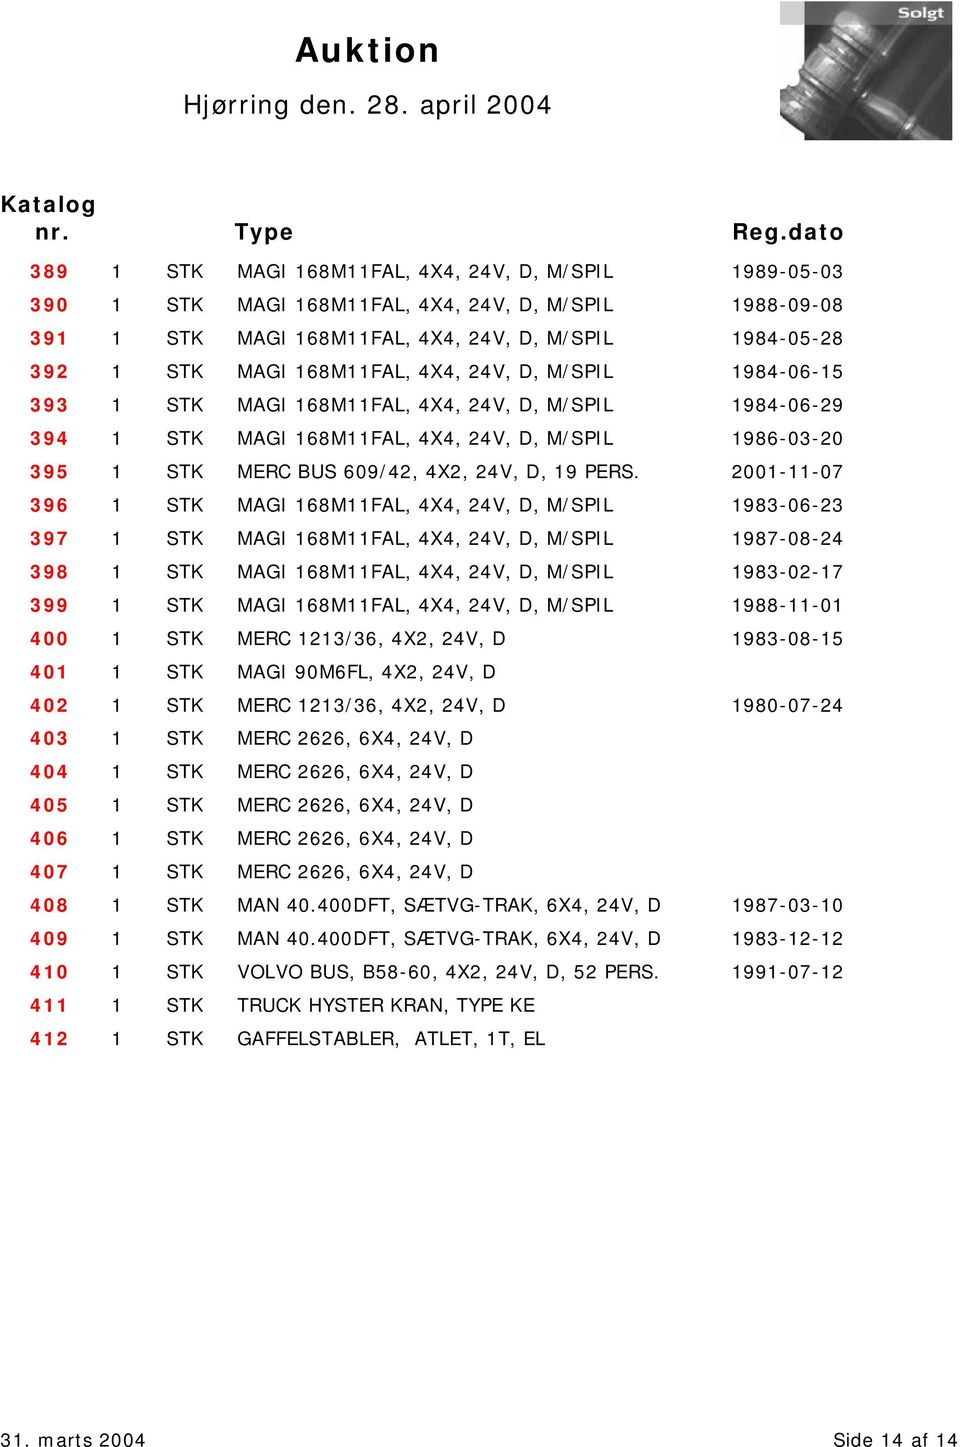 2001-11-07 396 1 STK MAGI 168M11FAL, 4X4, 24V, D, M/SPIL 1983-06-23 397 1 STK MAGI 168M11FAL, 4X4, 24V, D, M/SPIL 1987-08-24 398 1 STK MAGI 168M11FAL, 4X4, 24V, D, M/SPIL 1983-02-17 399 1 STK MAGI